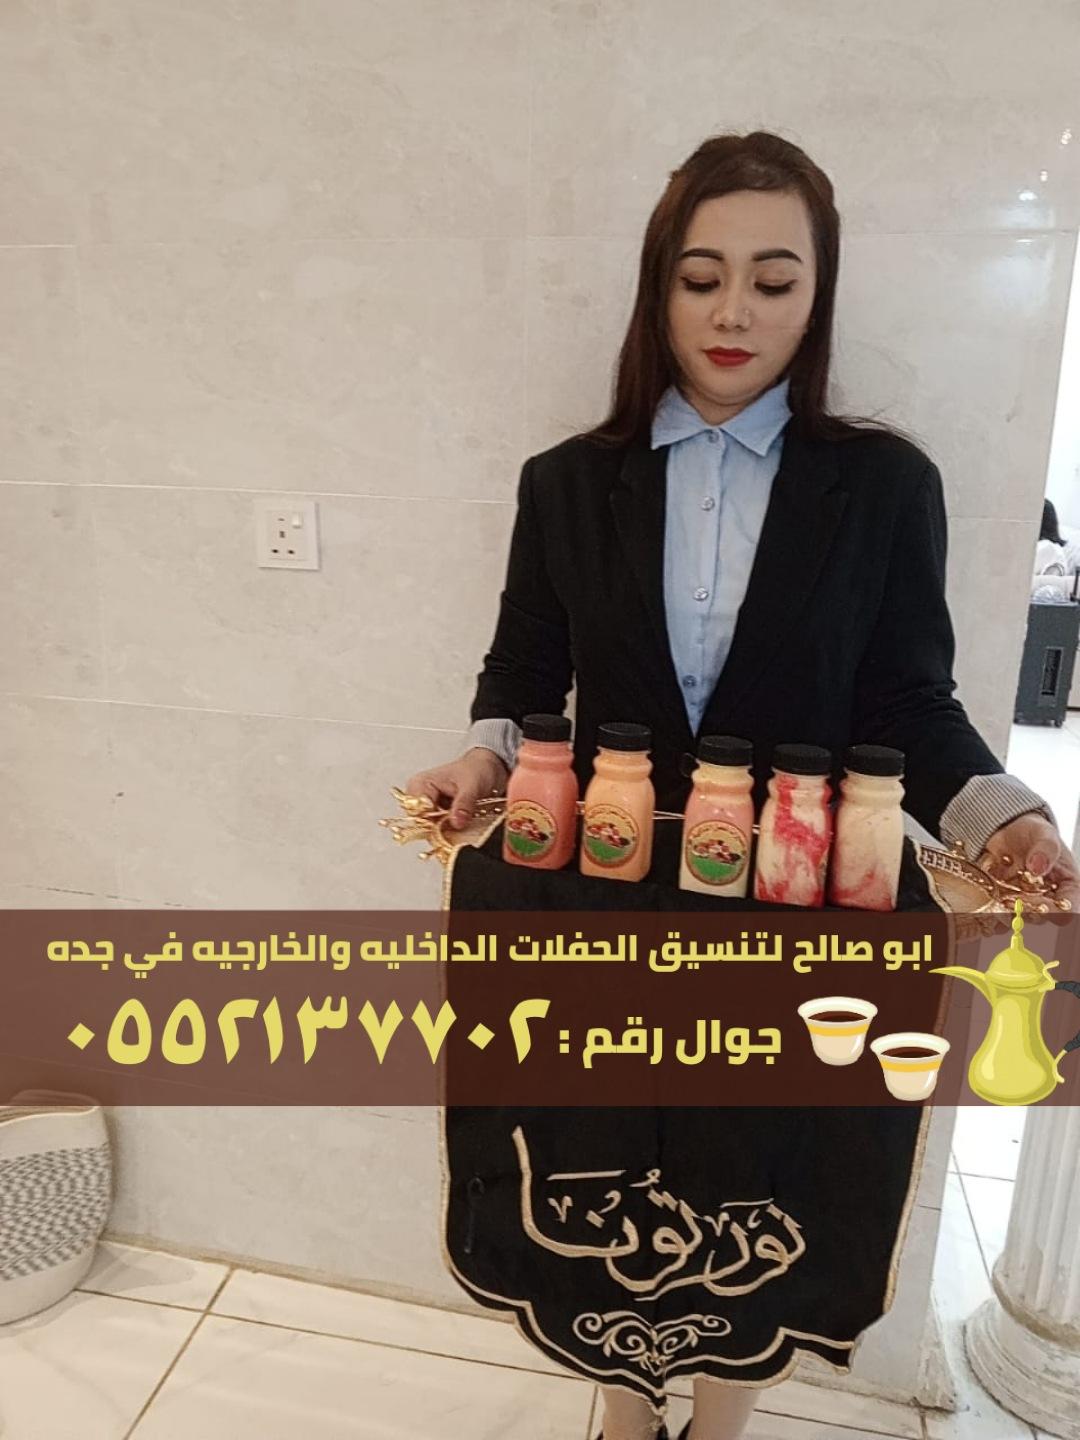 قهوجيين للضيافه ومباشرين قهوة في جدة,0552137702 863988717